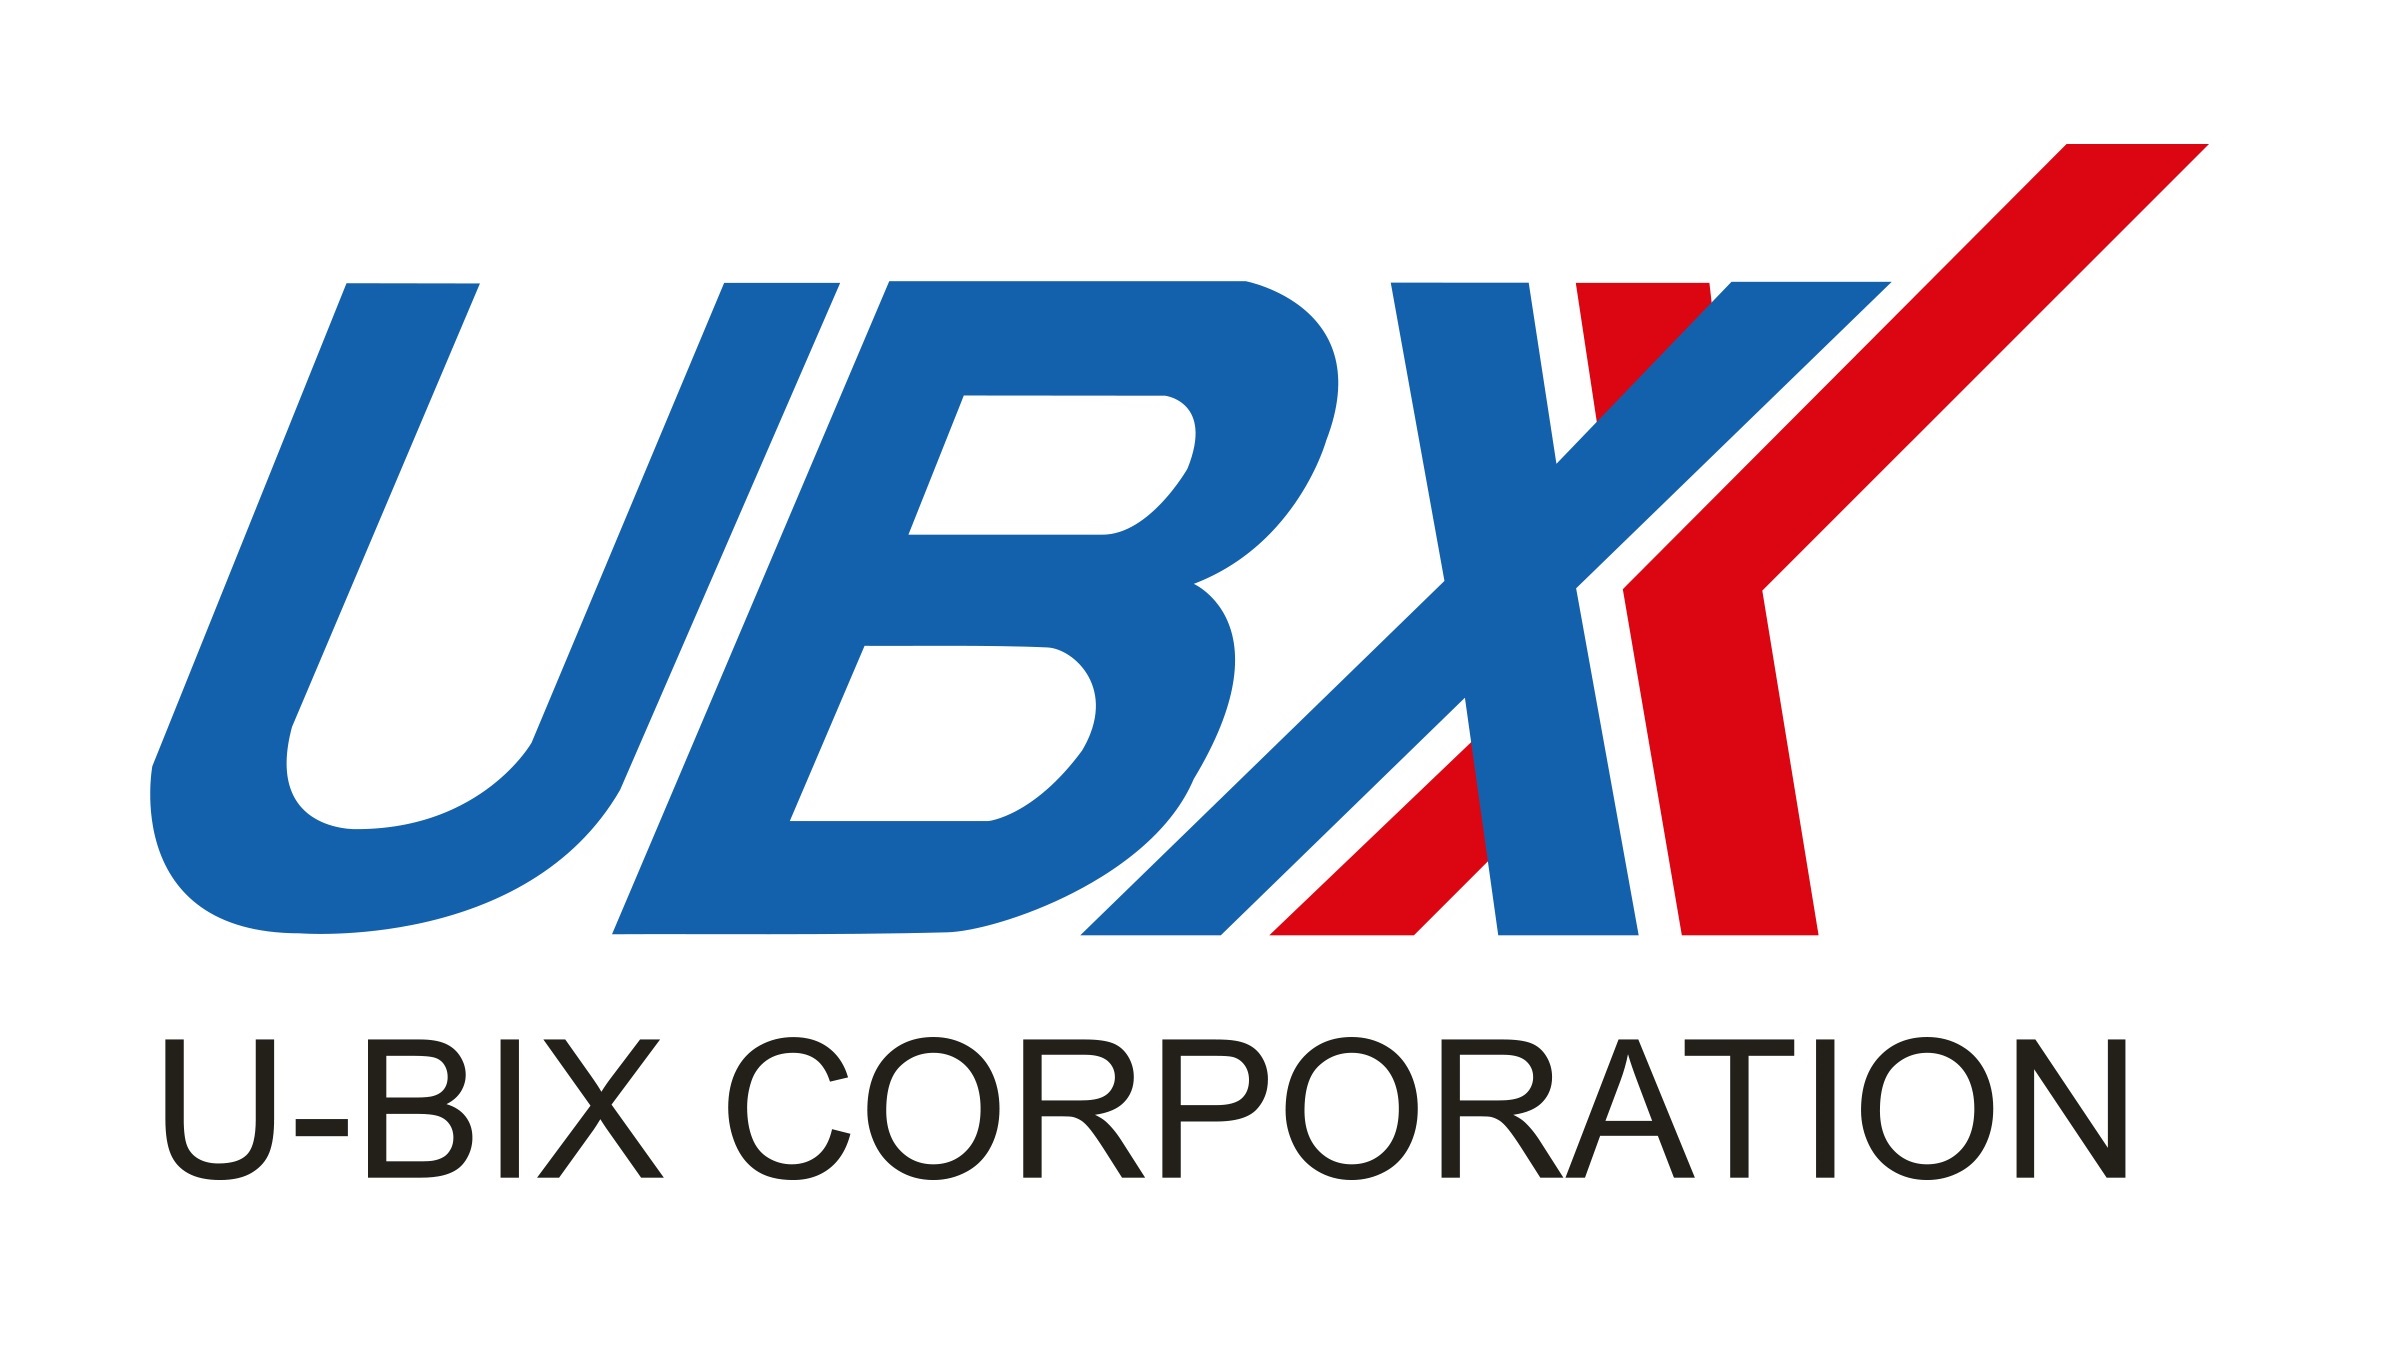 U-BIX Corporation